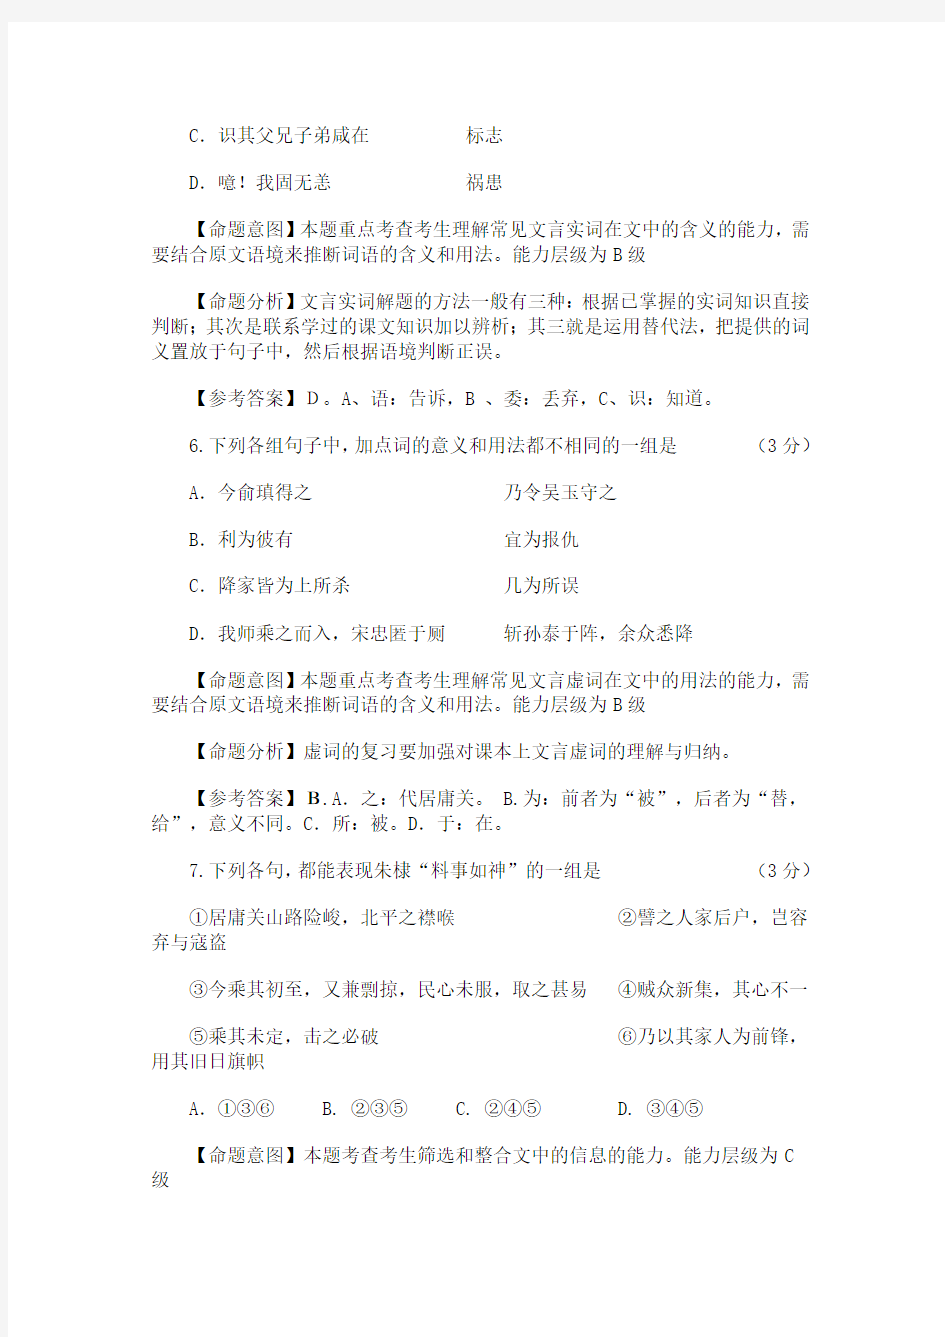 原创高考语文复习备考资料 20102013年广东高考语文试卷阅读